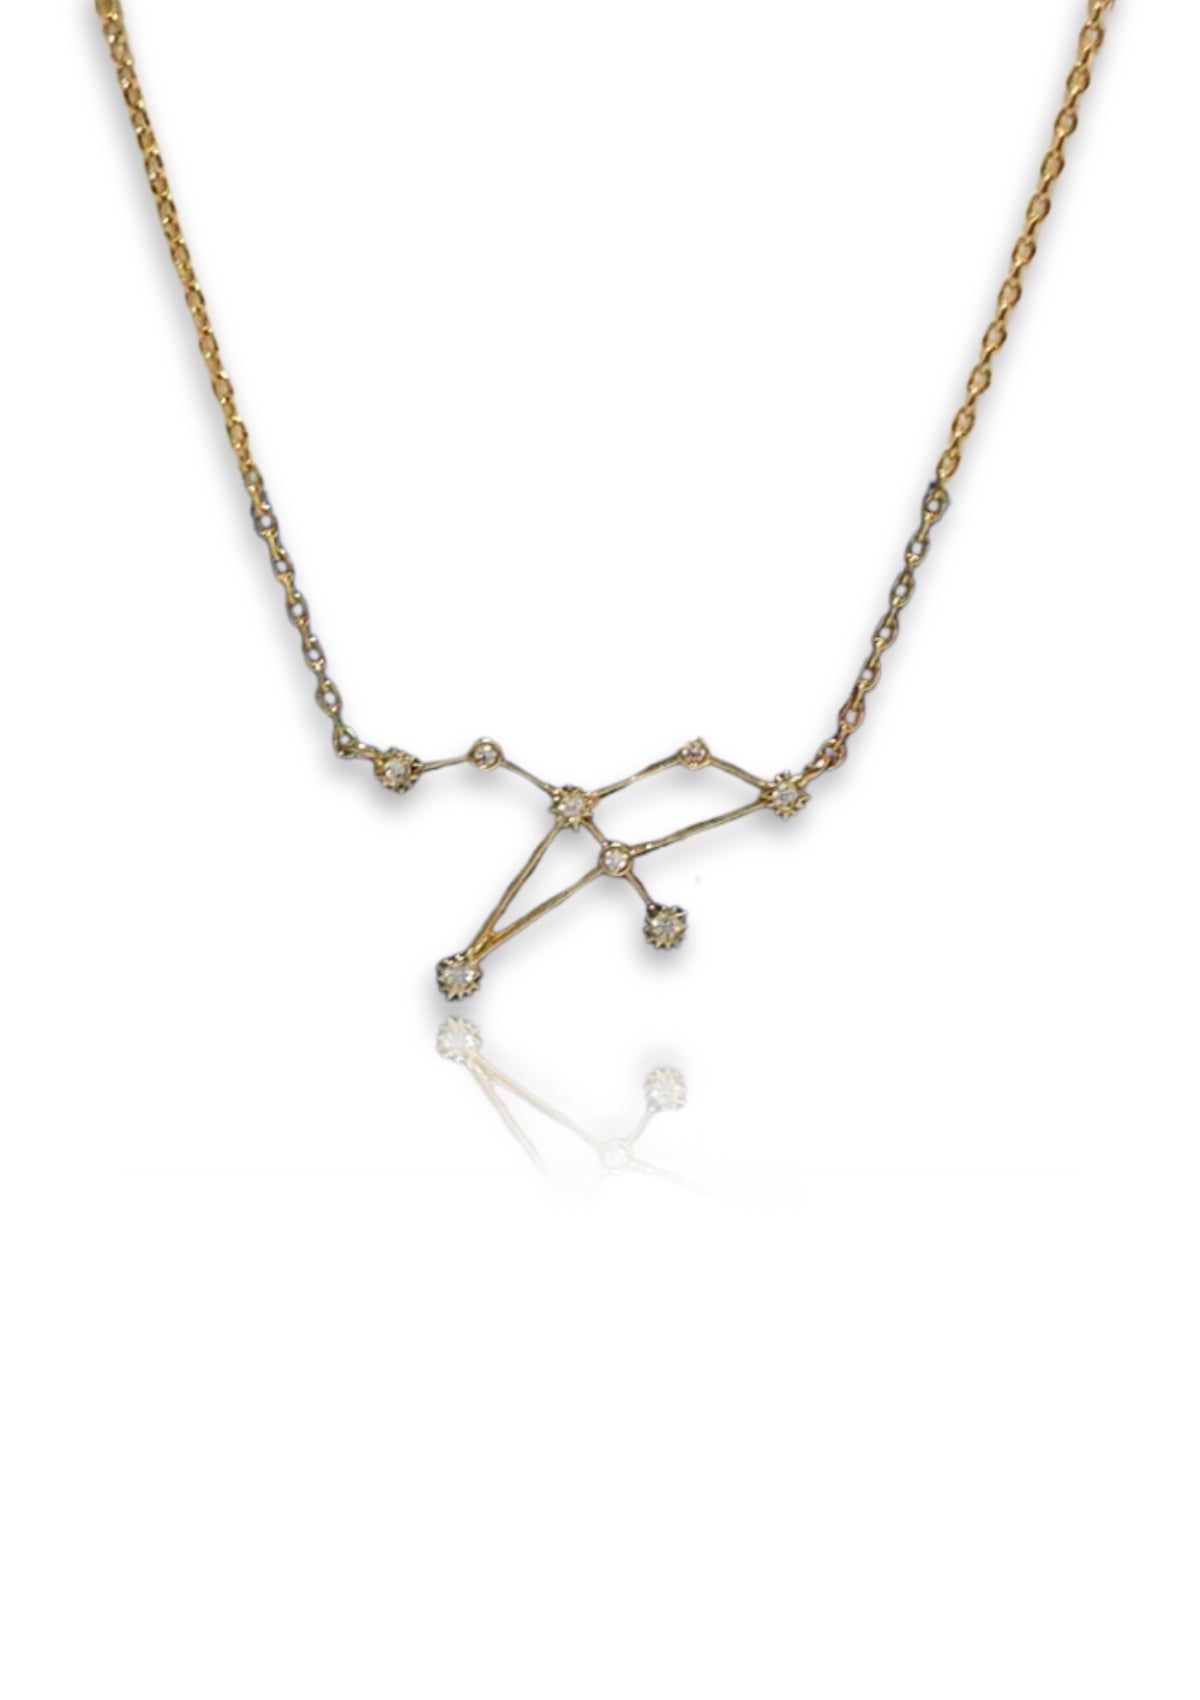 Zodiac Constellation Necklace - Leo -TAI Jewelry- Ruby Jane-